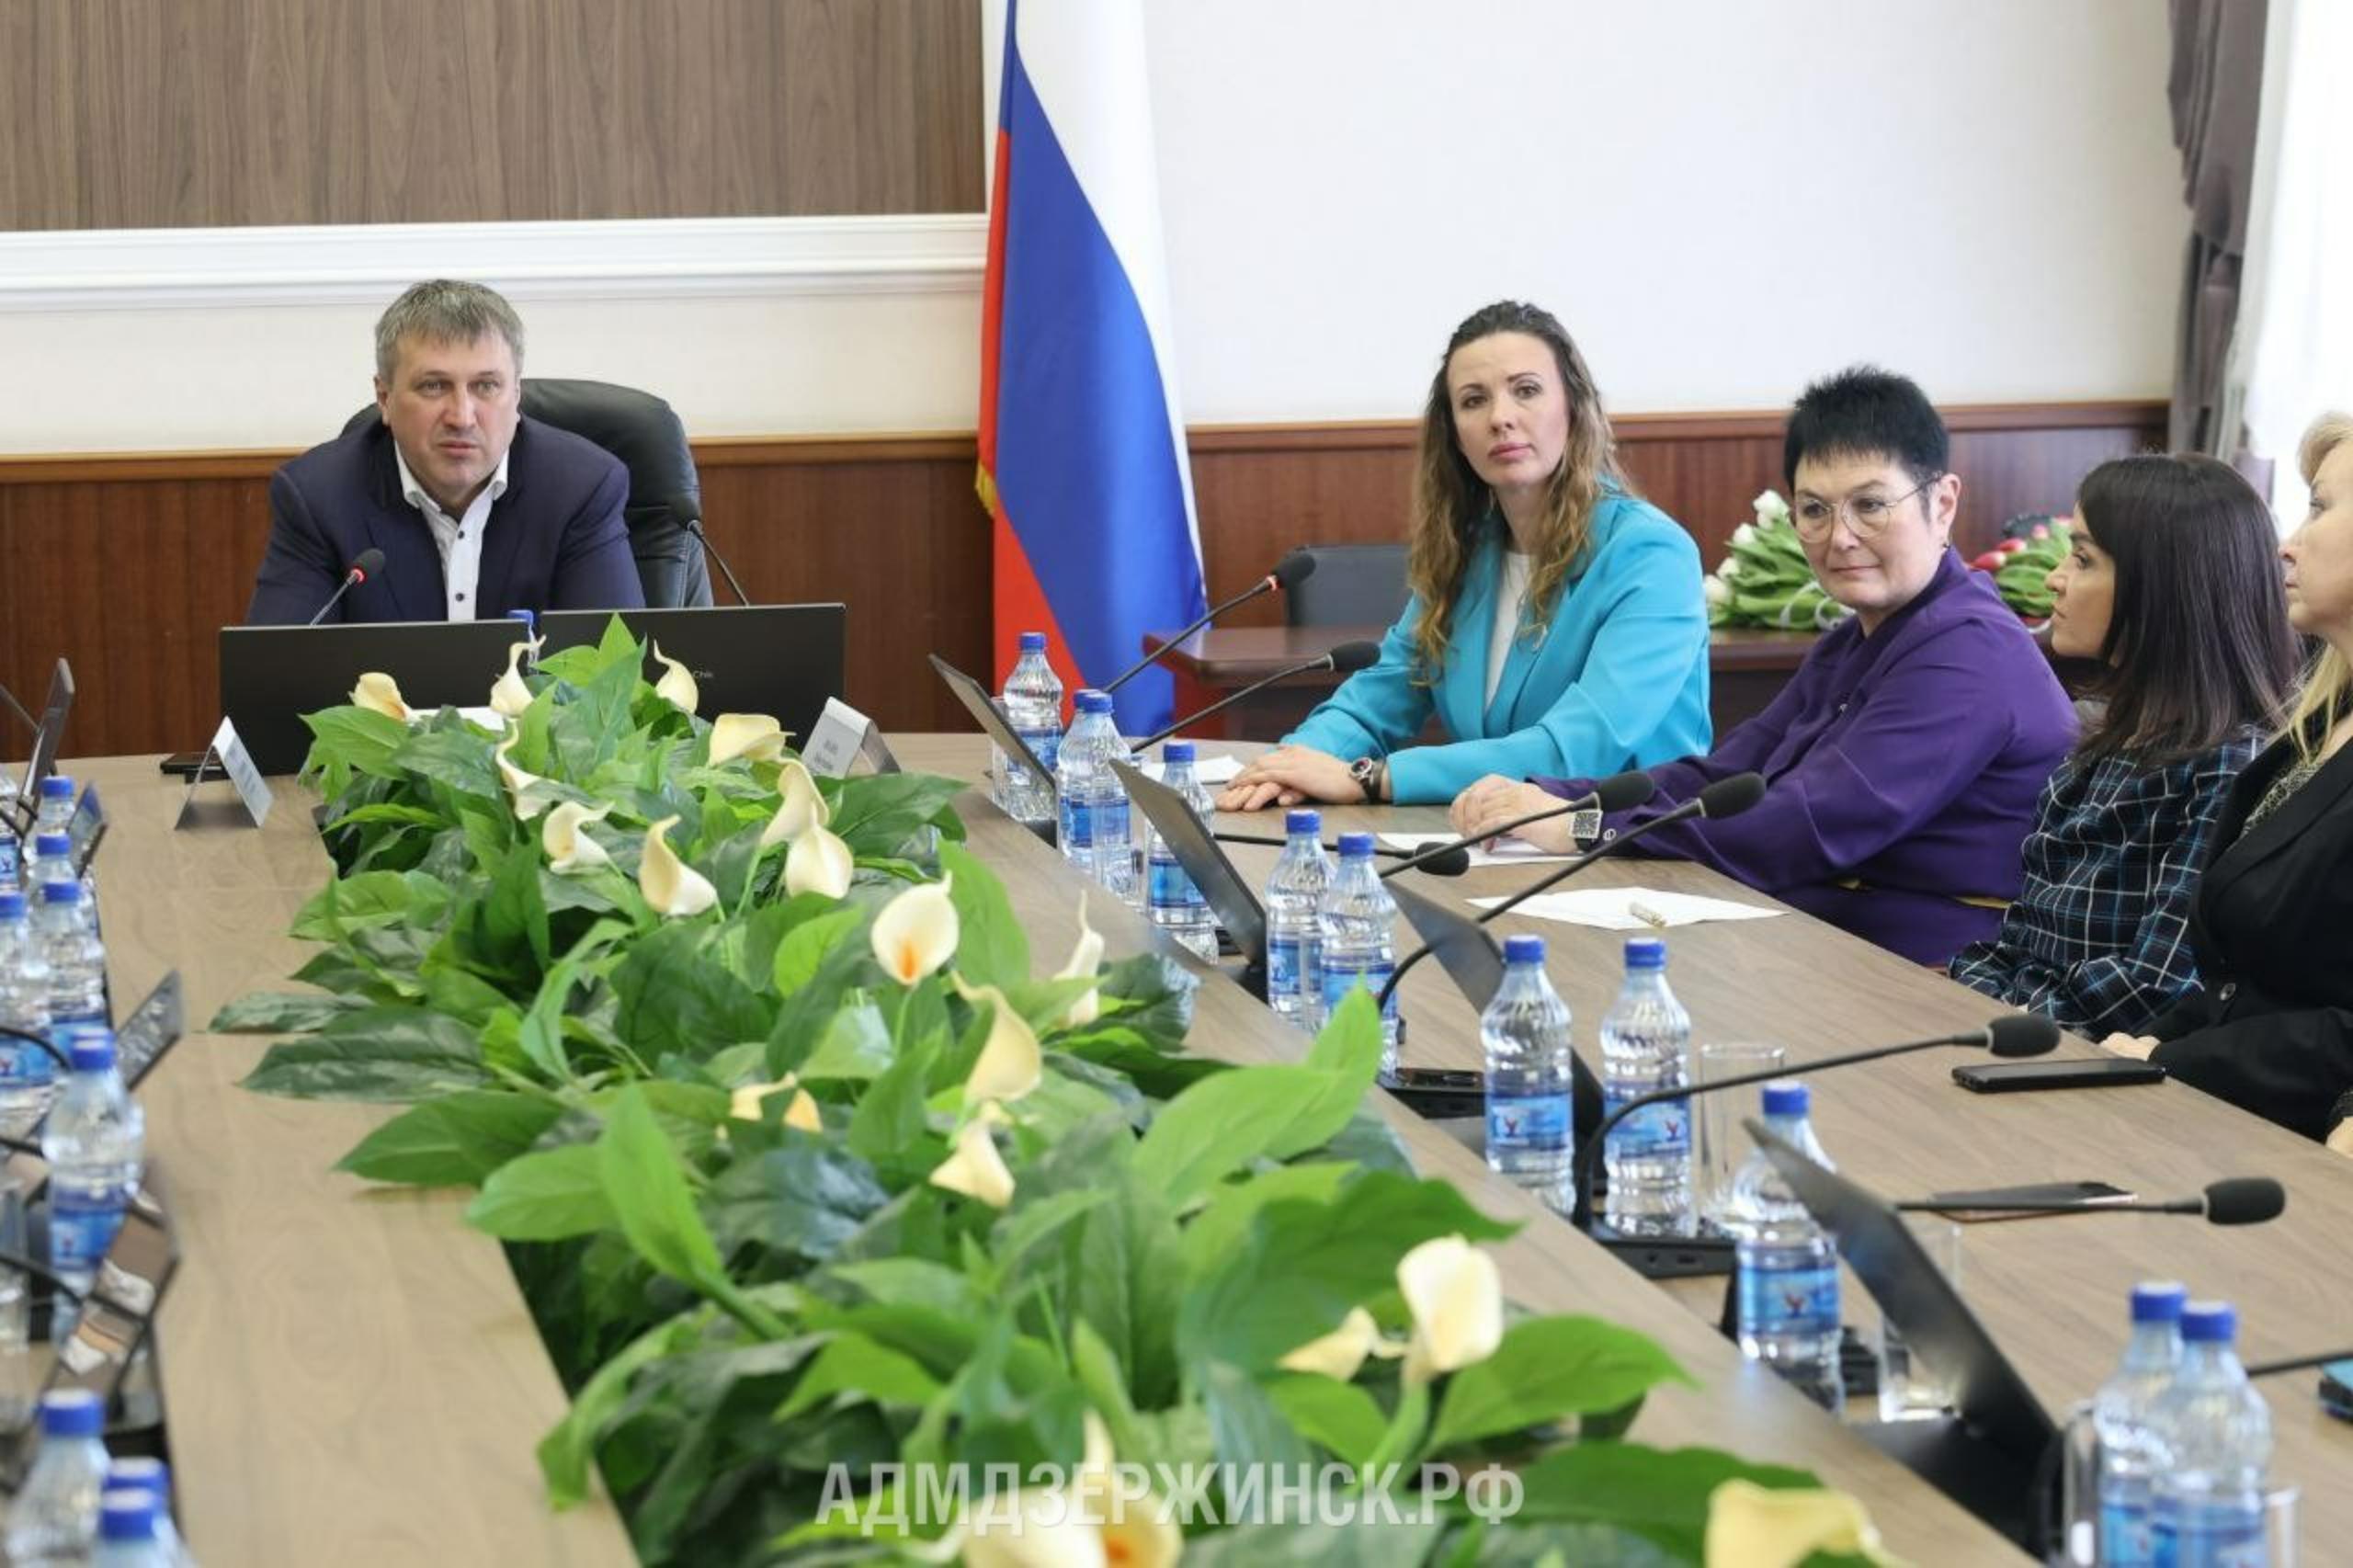 Иван Носков: «Благодаря совместной работе мы можем сделать наш Дзержинск лучше»